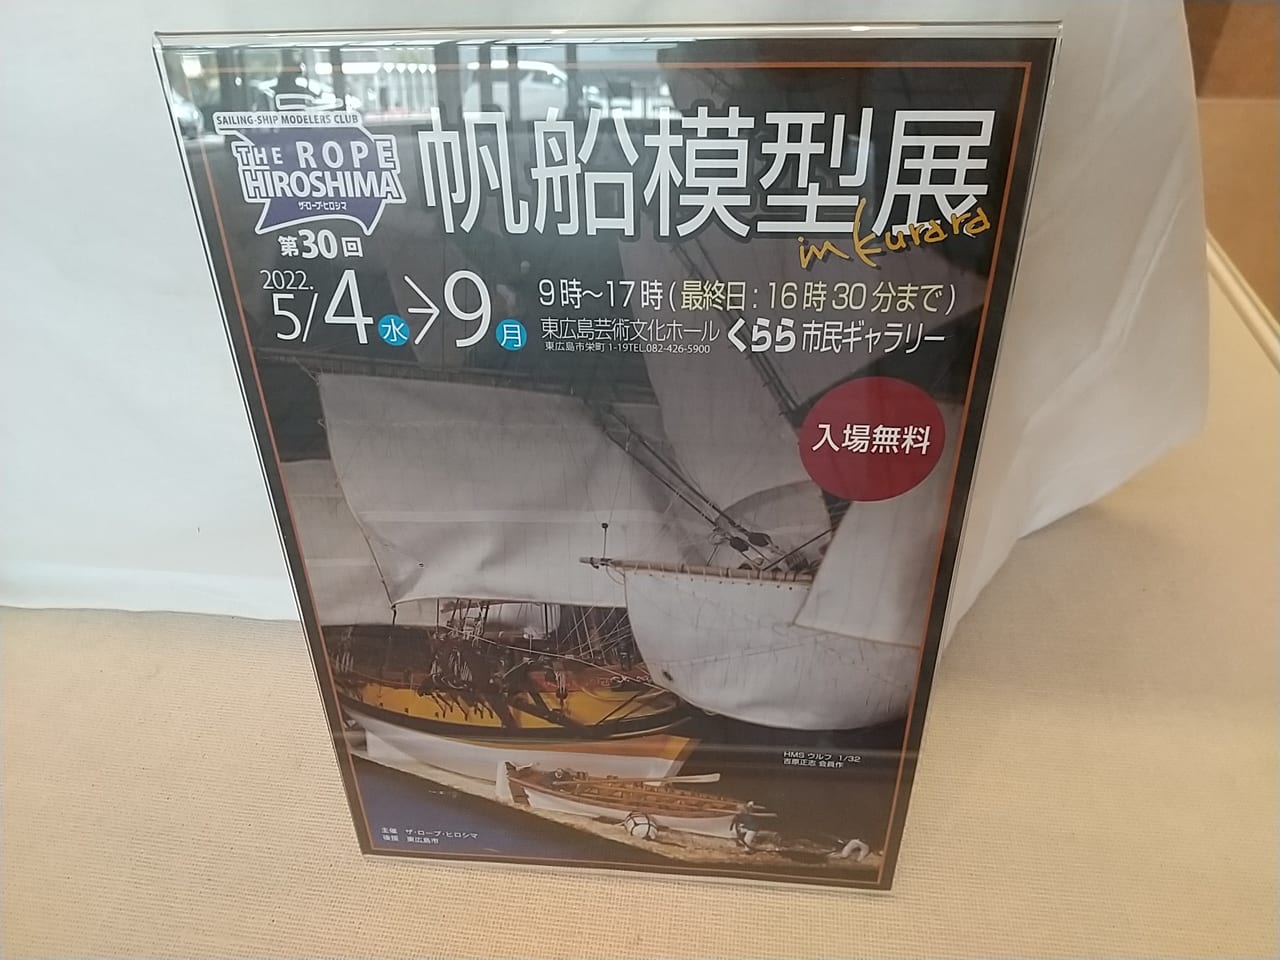 東広島芸術文化ホールくらら「市民ギャラリー」にて「帆船模型展」が開催